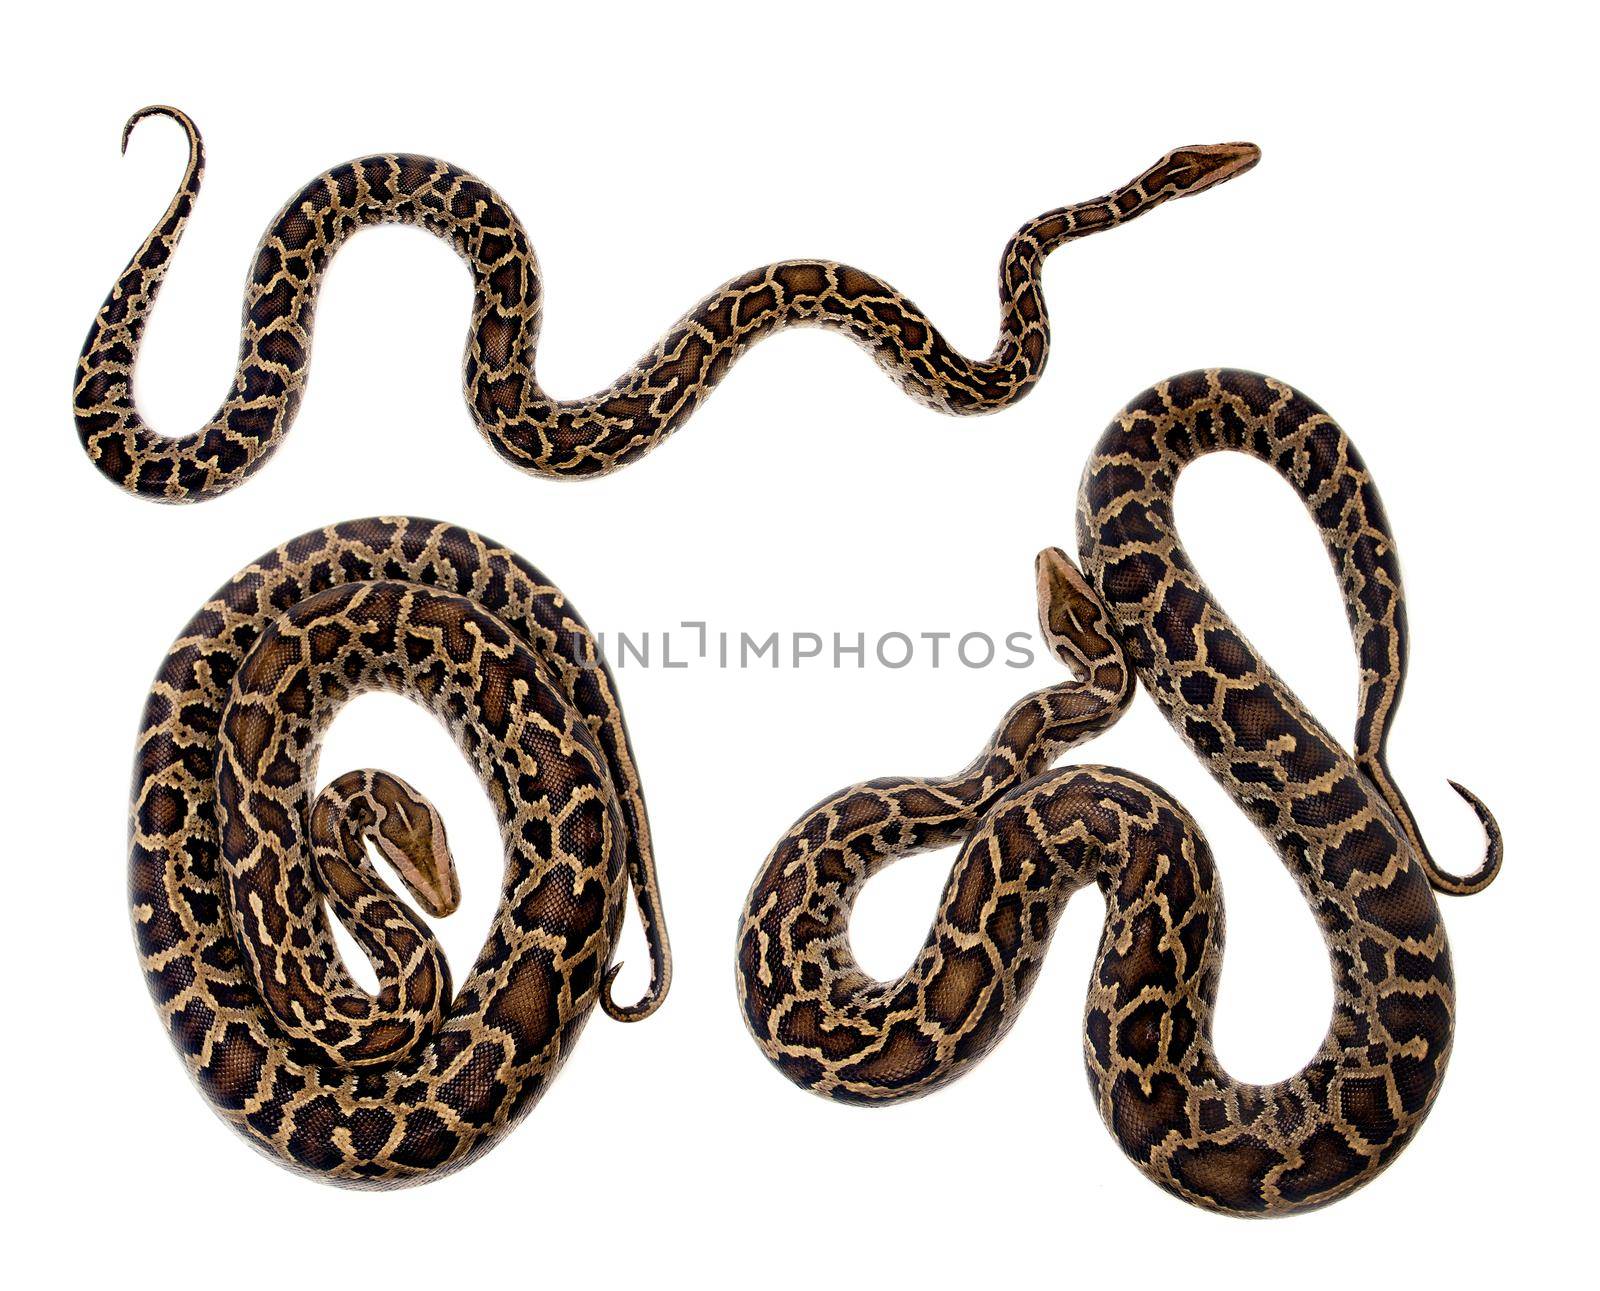 Burmese Python, Python molurus bivittatus, isolated on white background